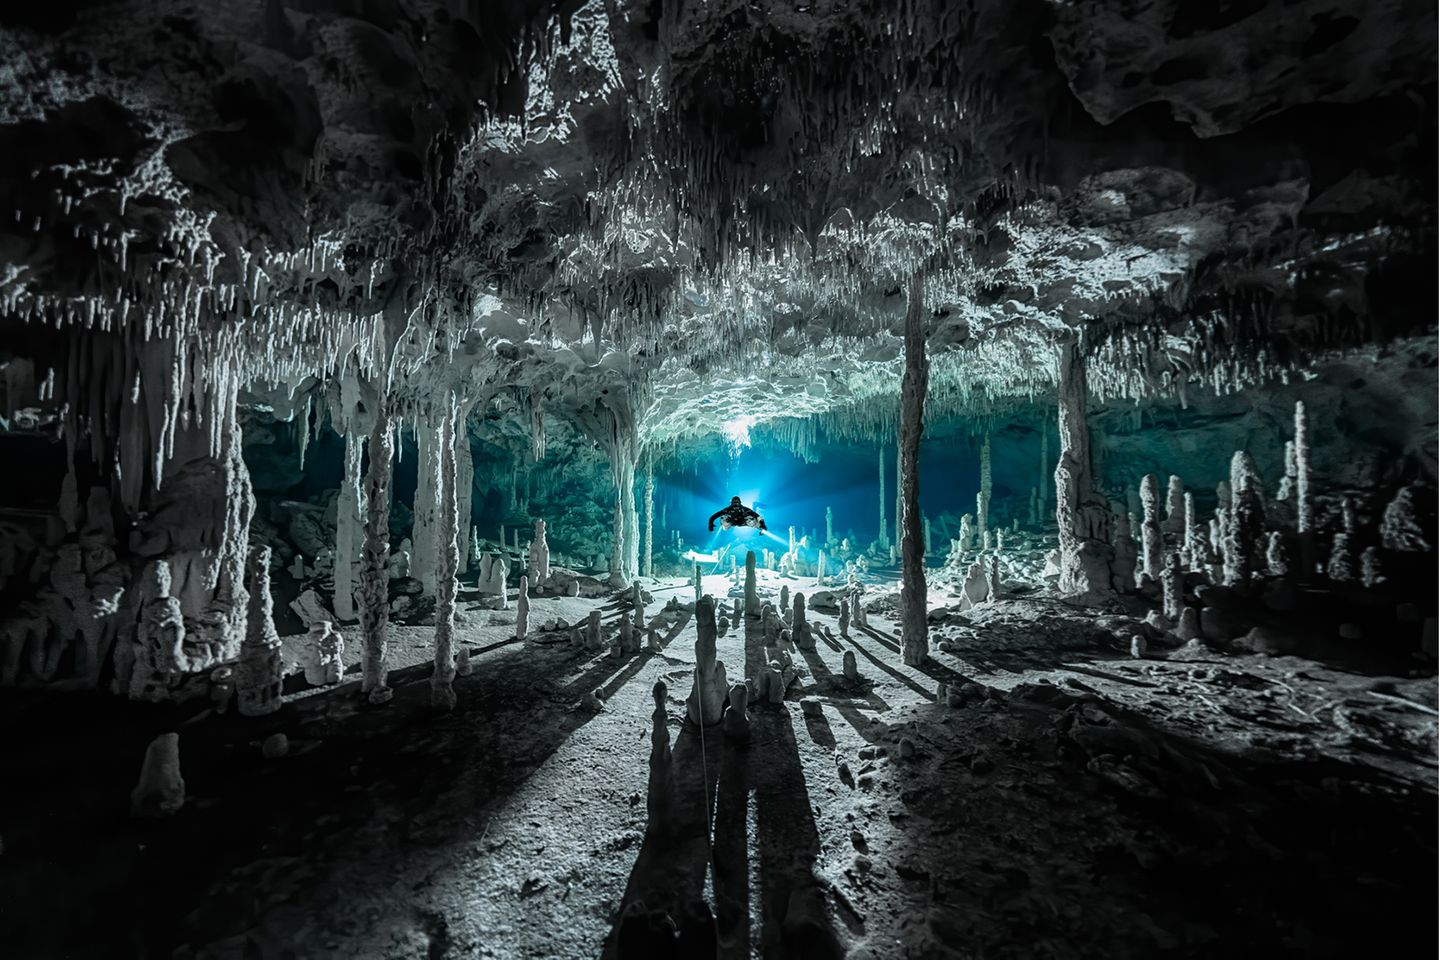 Märchenhaft wirkt die mexikanische Cenote Dos Pisos. Durch das Licht im Hintergrund werfen die Speläotheme, sekundäre Mineralablagerungen, lange Schatten. Martin Broen siegt  mit diesem Bild in der Kategorie "Exploration Photographer of the Year".